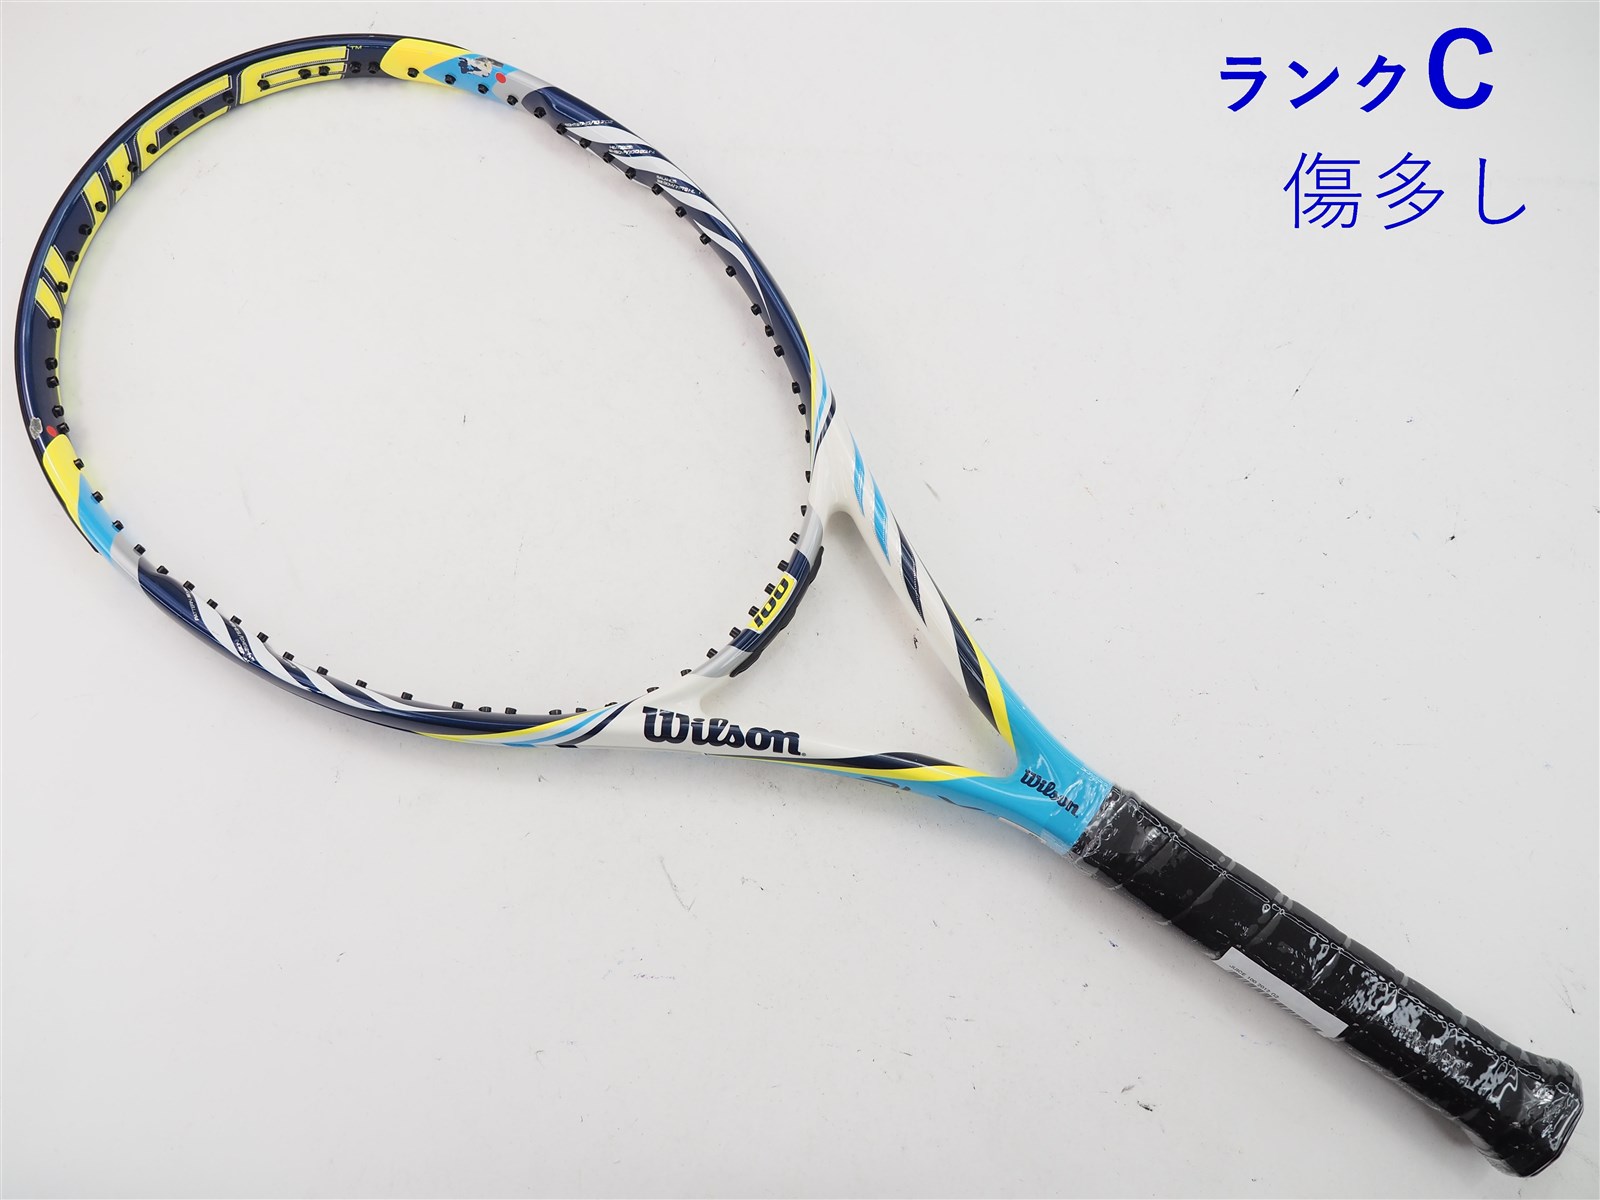 L2装着グリップテニスラケット ウィルソン ジュース 100エル 2013年モデル【一部グロメット割れ有り】 (L2)WILSON JUICE 100L 2013